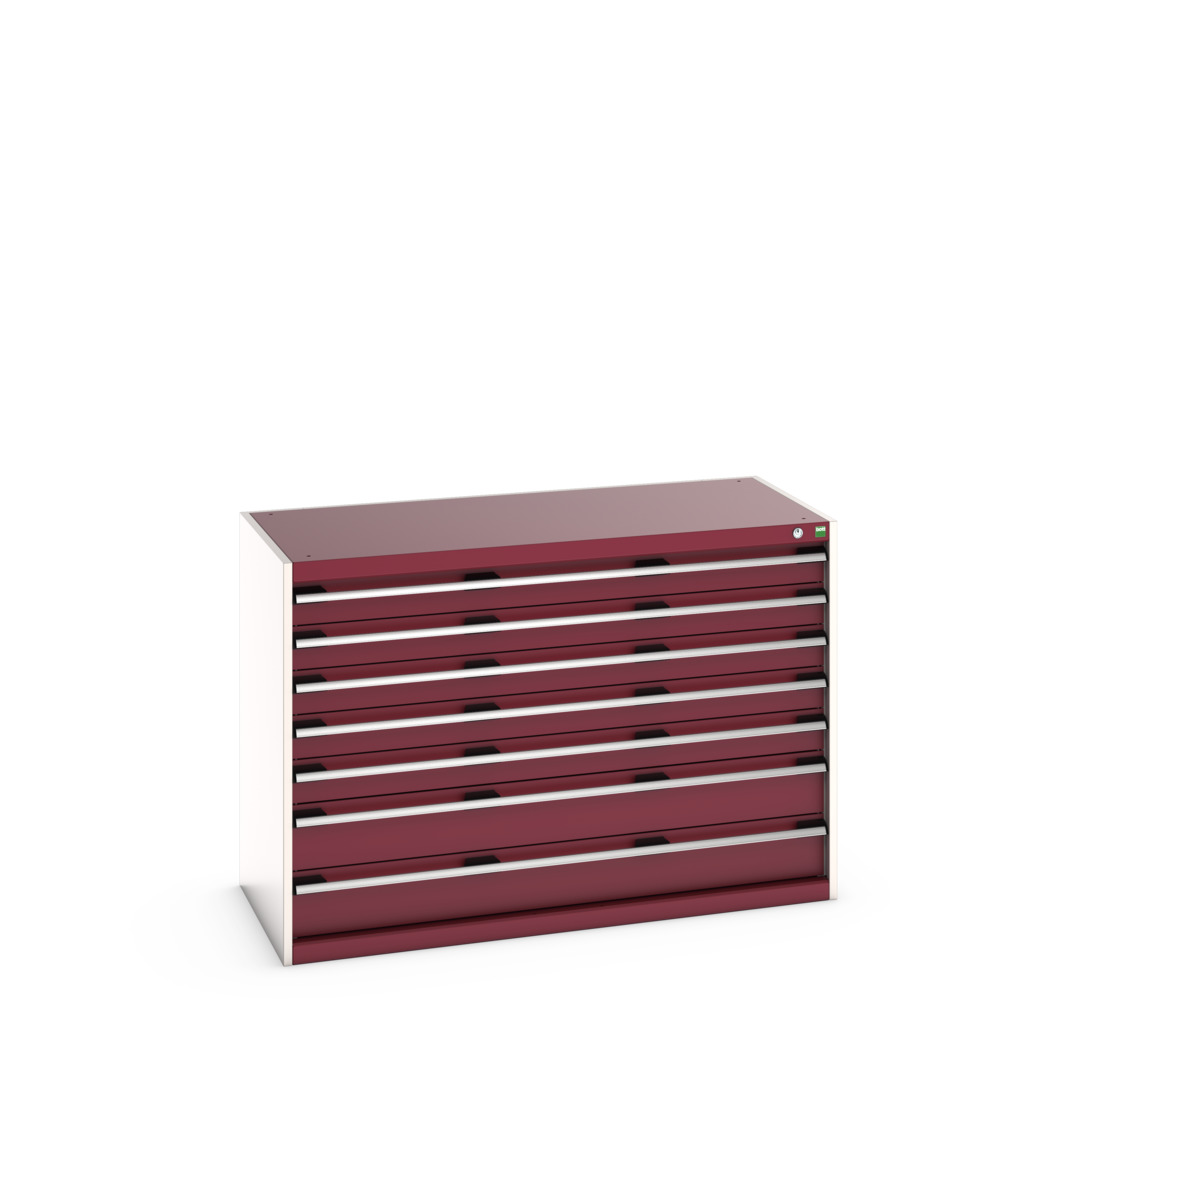 40022117.24V - cubio drawer cabinet